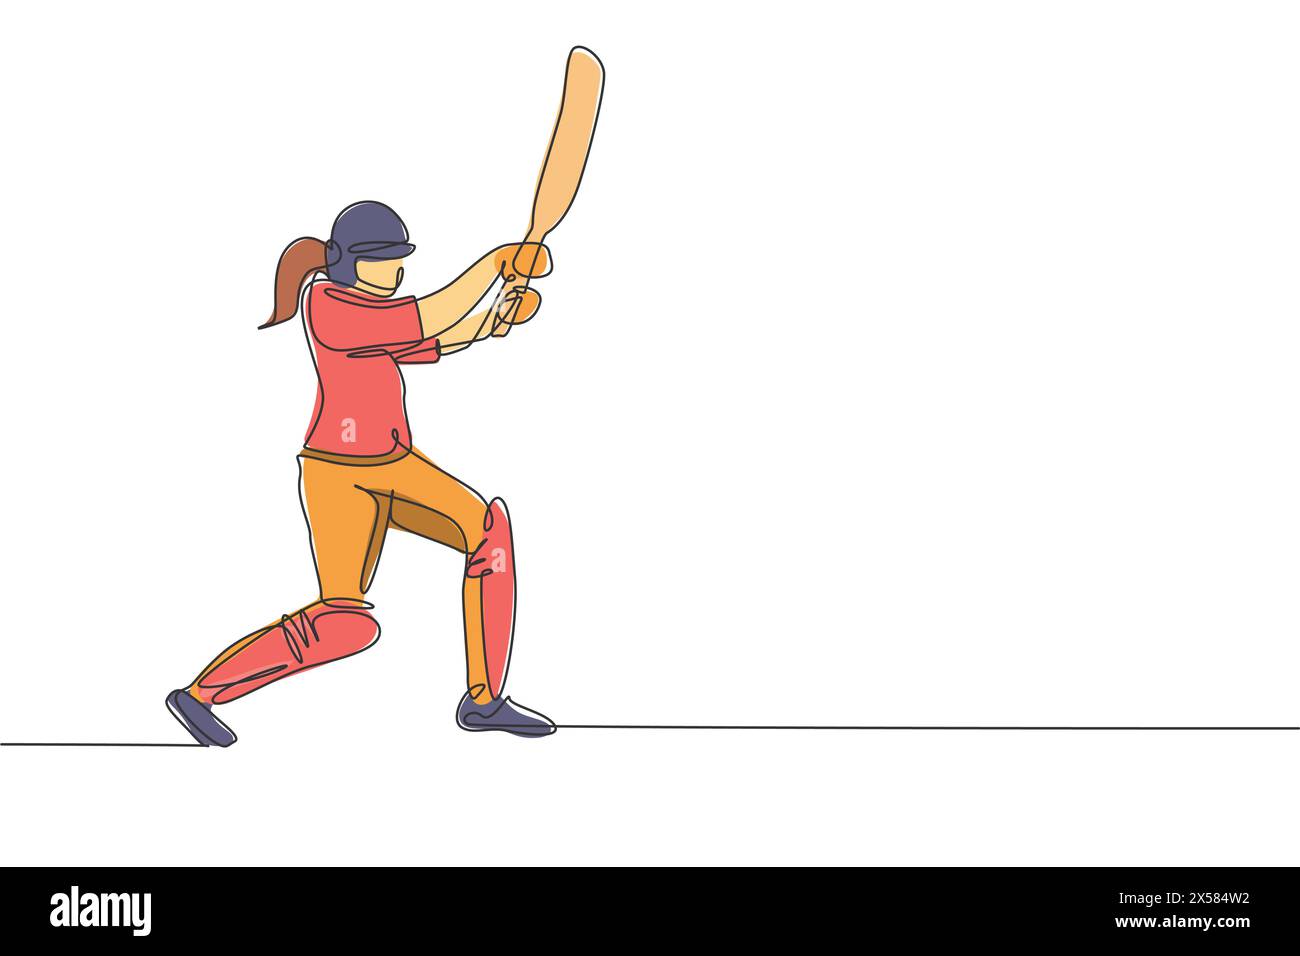 Eine einzelne Zeilenzeichnung der jungen energischen Frau Cricketspielerin stehend und schlug den Ball so harte Vektor-Illustration. Sportkonzept. Moderner Continuou Stock Vektor